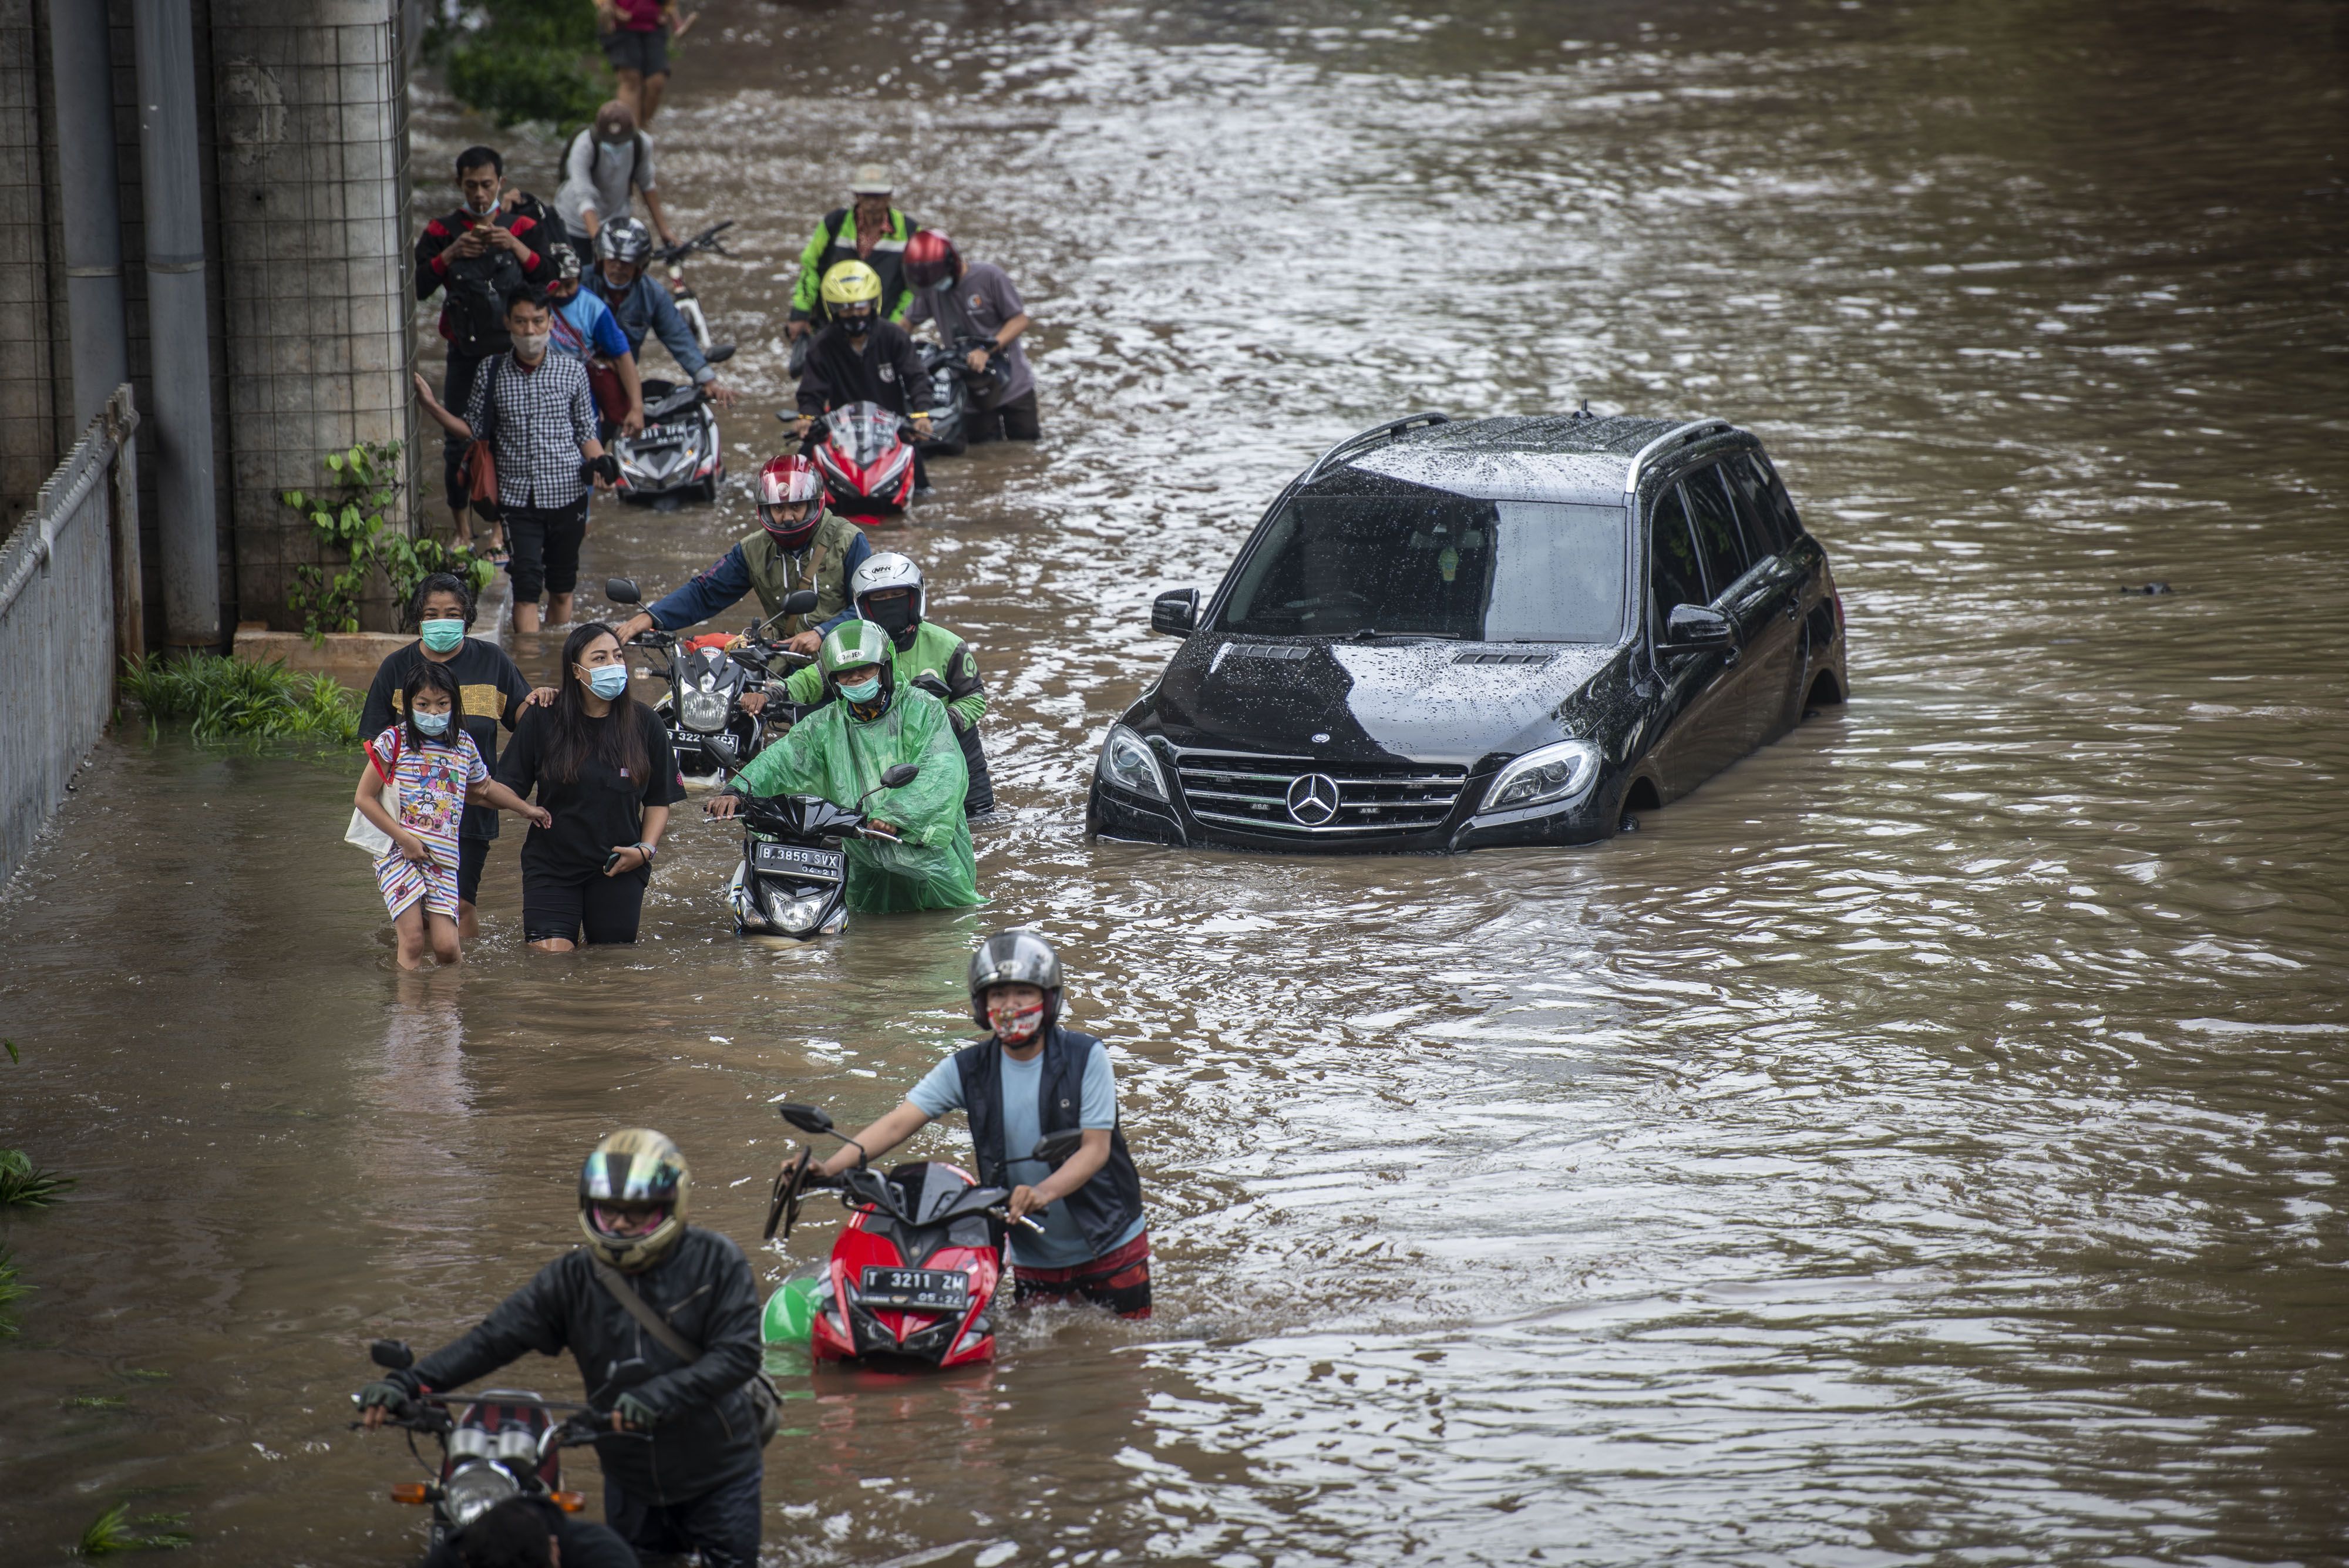 Warga mendorong sepeda motornya melintasi banjir di Jalan Kapten Tendean, Mampang Prapatan, Jakarta, Sabtu 20 Februari 2021. Banjir tersebut disebabkan karena curah hujan tinggi sejak Jumat 19 Februari malam. 